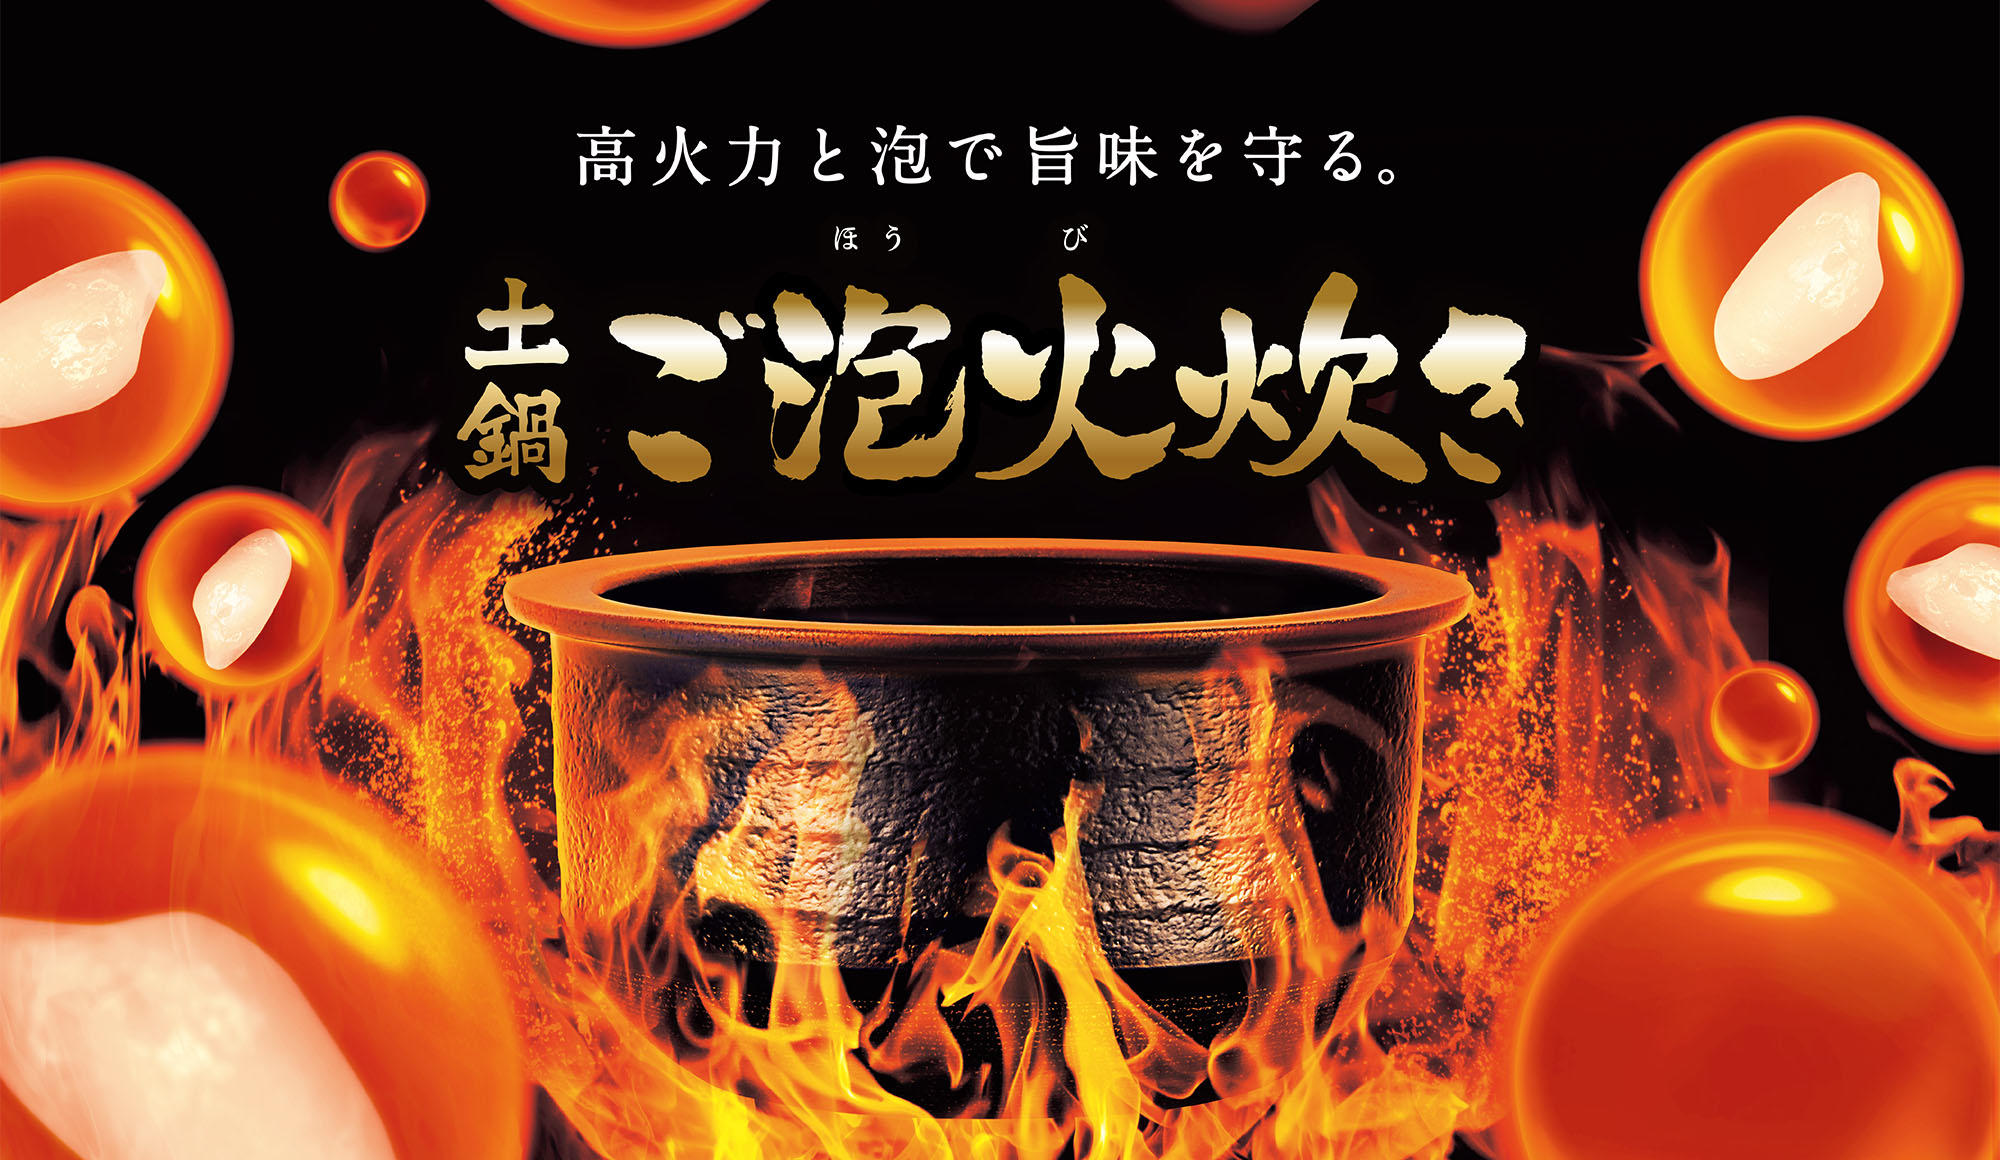 土鍋圧力IH炊飯ジャー〈炊きたて〉JPH-A102 | 製品情報 | タイガー魔法瓶